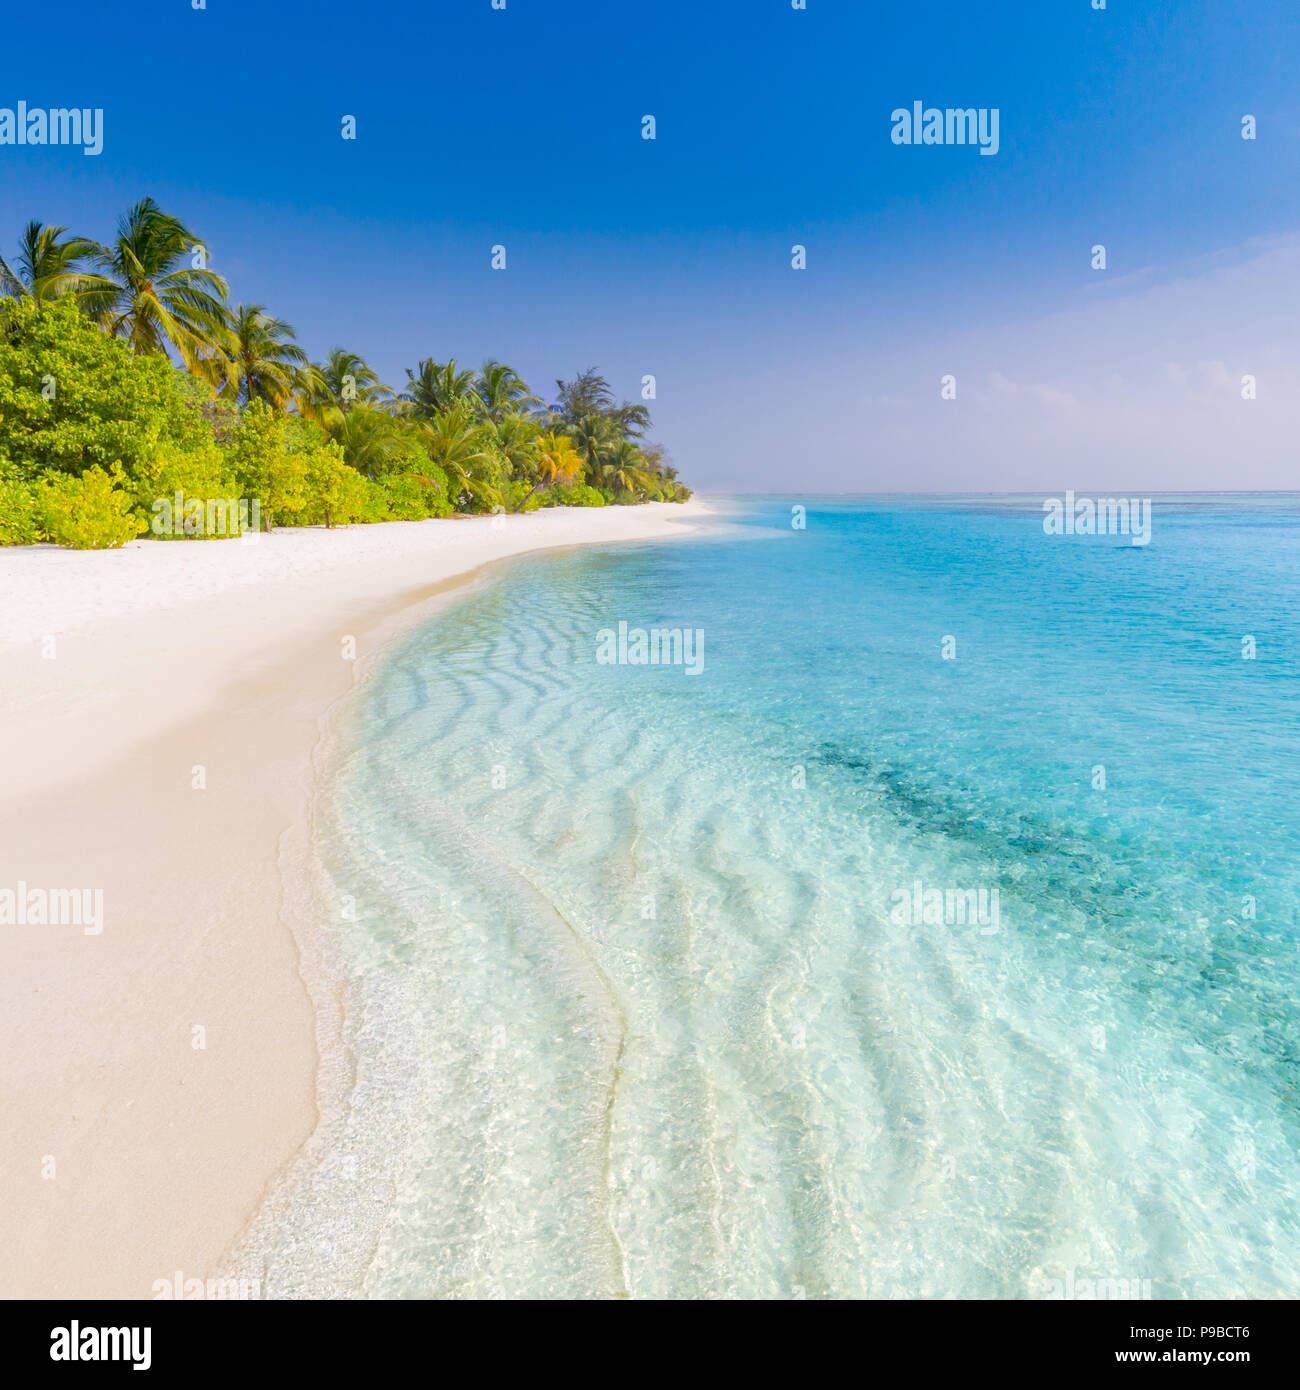 Playa tranquila banner. Palmeras y asombrosas vistas al mar azul con arena blanca Foto de stock